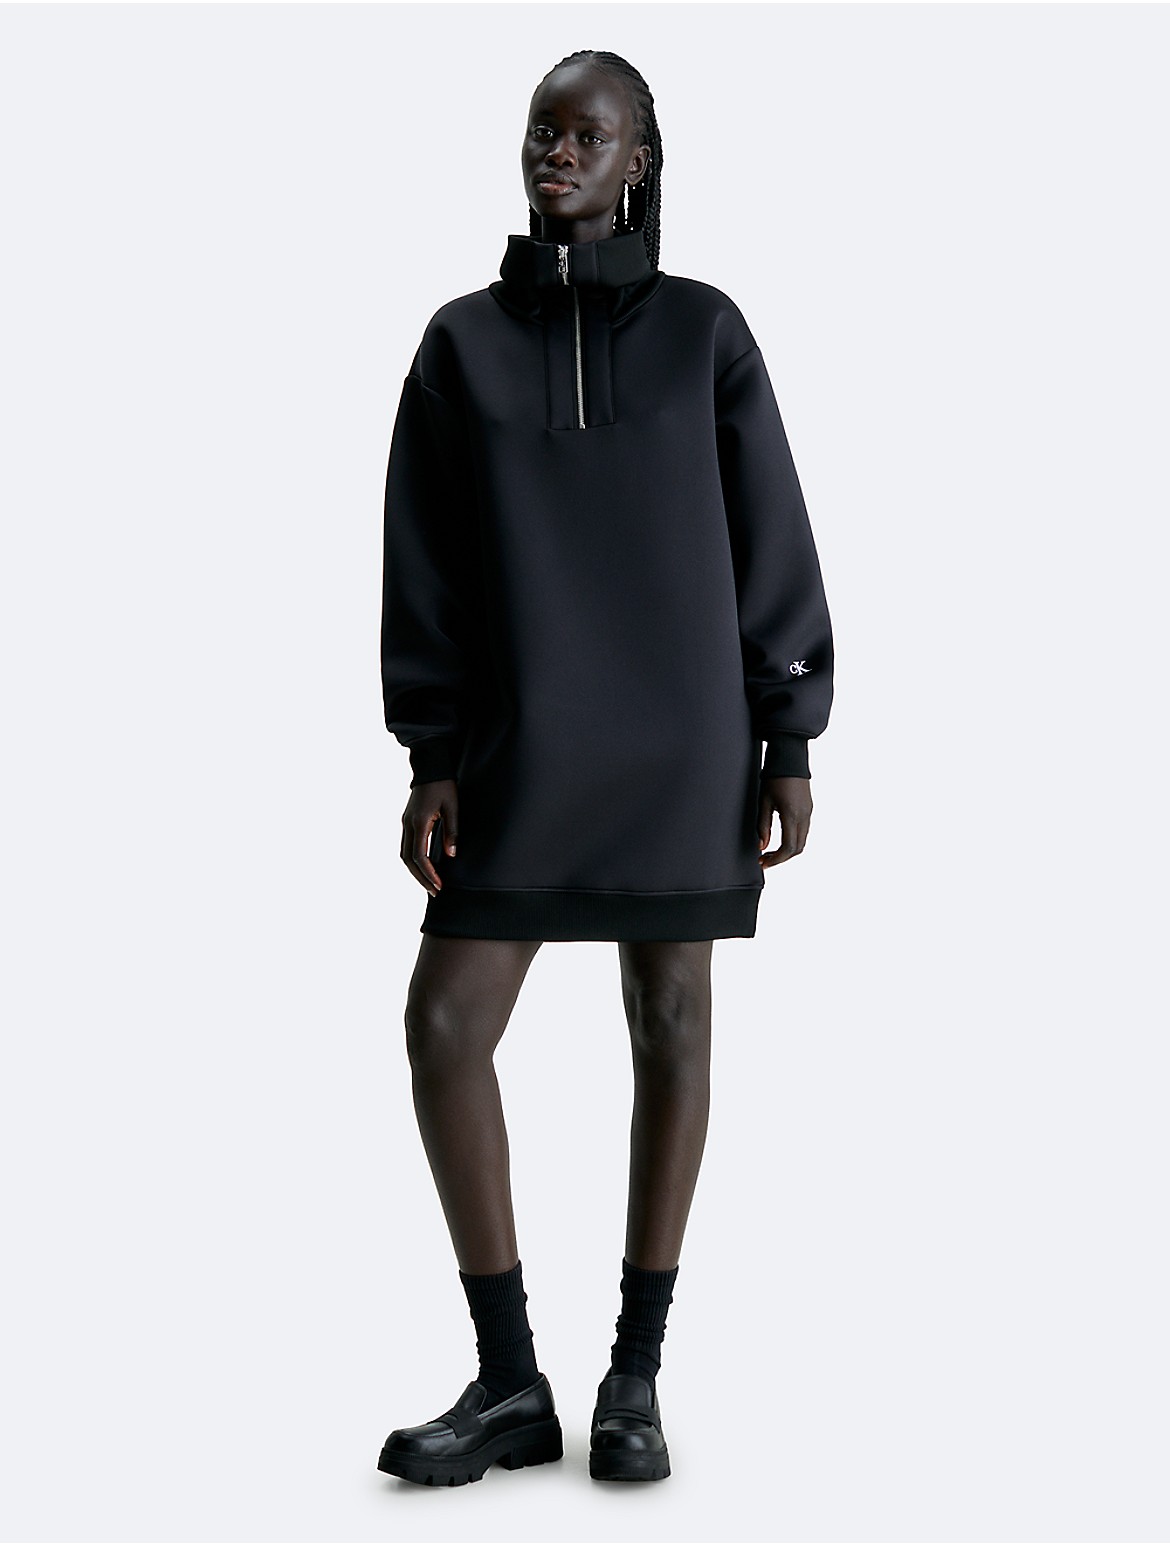 Calvin Klein Women's Spacer Half Zip Sweatshirt Dress - Black - S